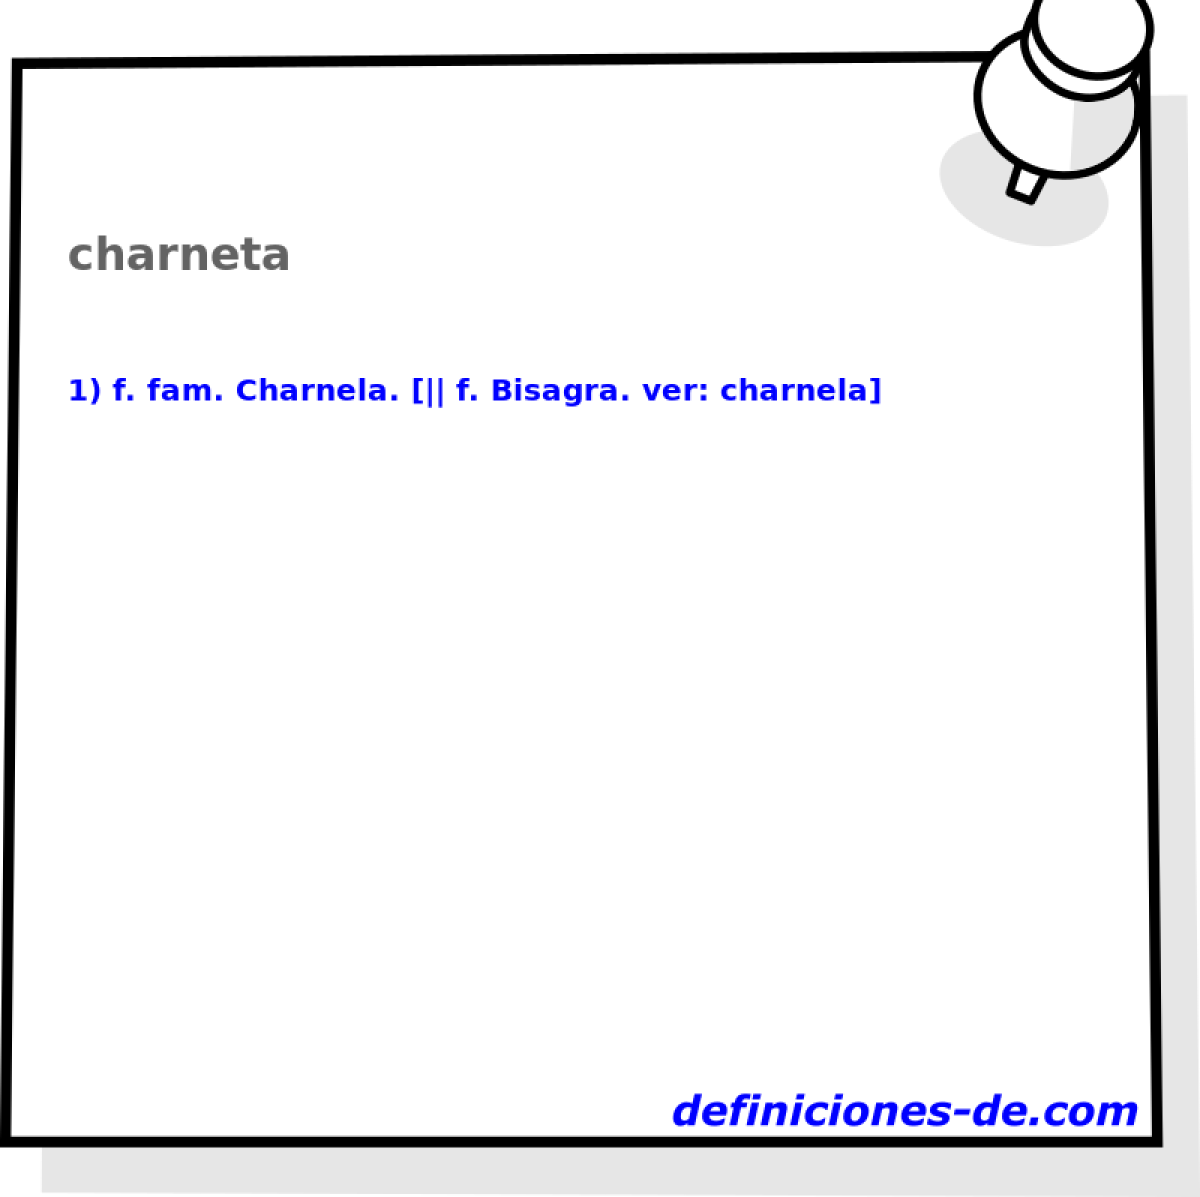 charneta 